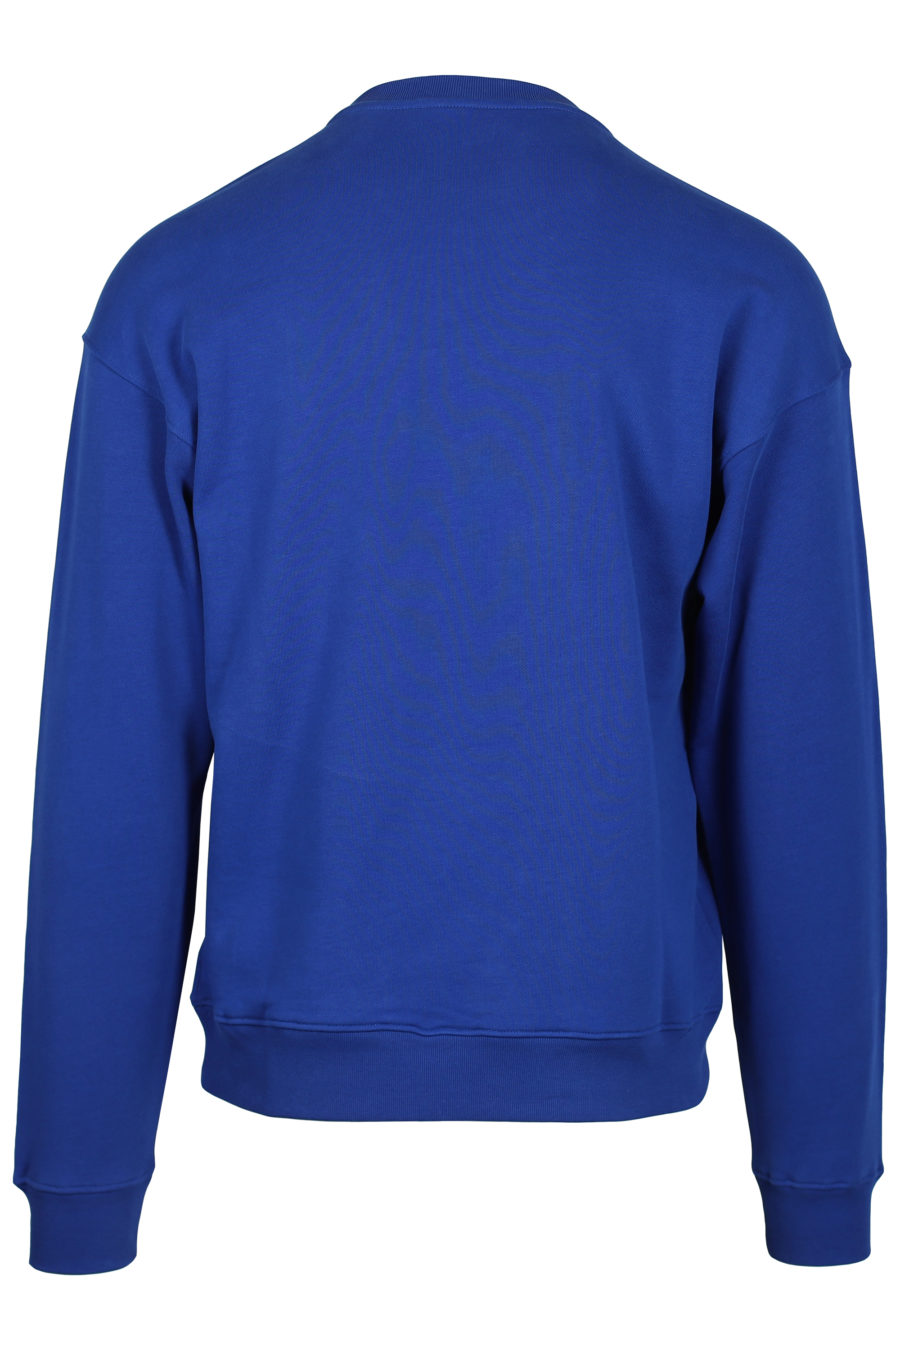 Logo du sweat-shirt bleu électrique "Couture Milano" - IMG 2547